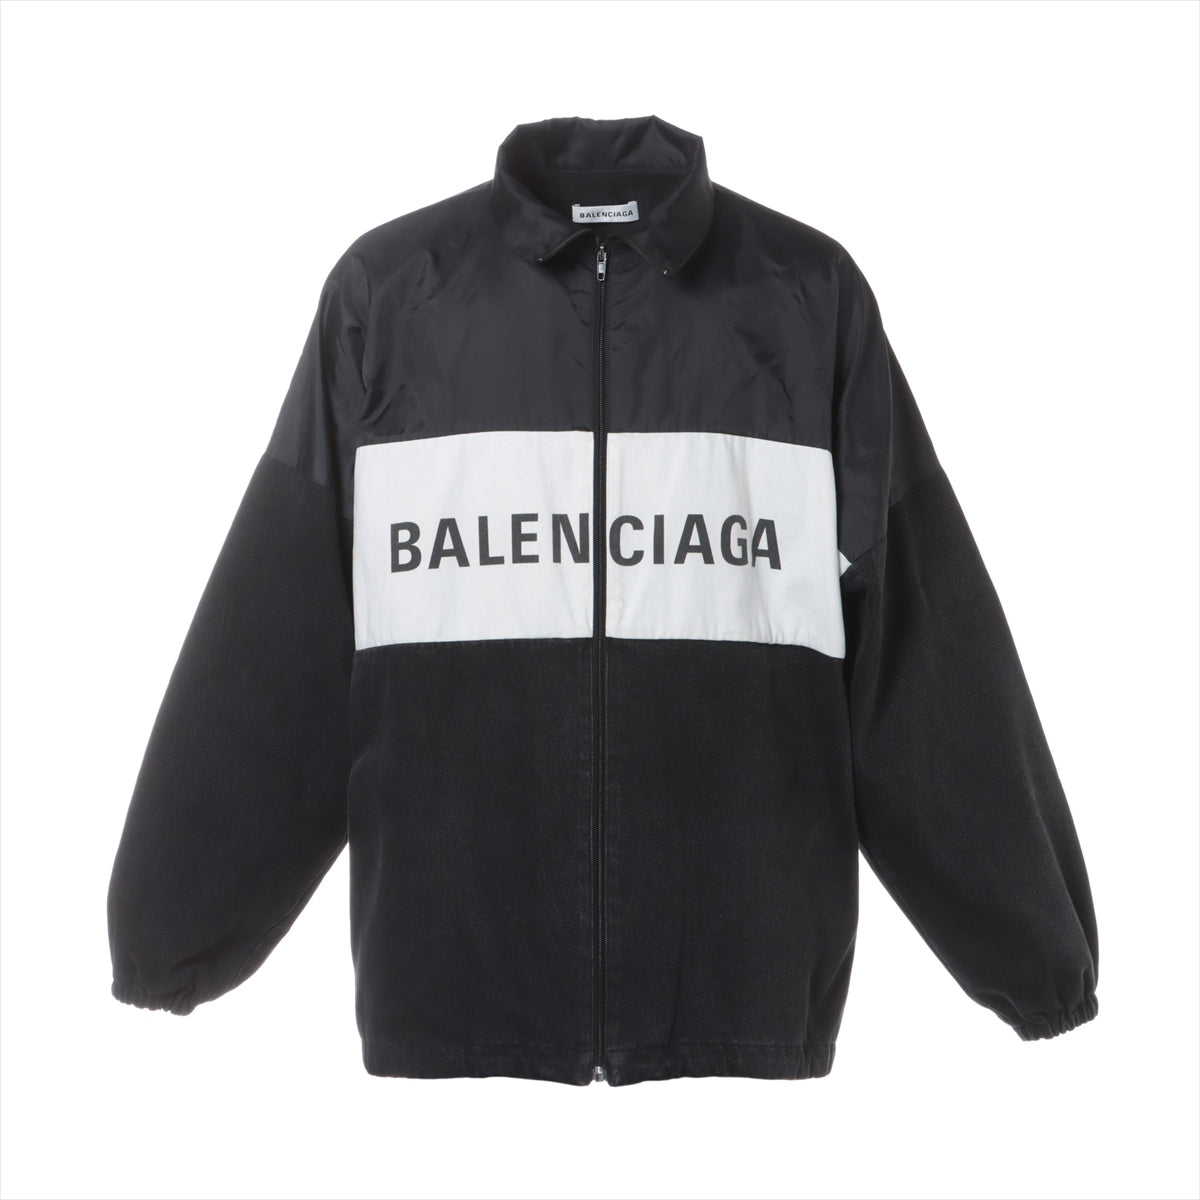 Balenciaga 18 years Cotton & nylon Jacket 34 Men's Gray x white  529213